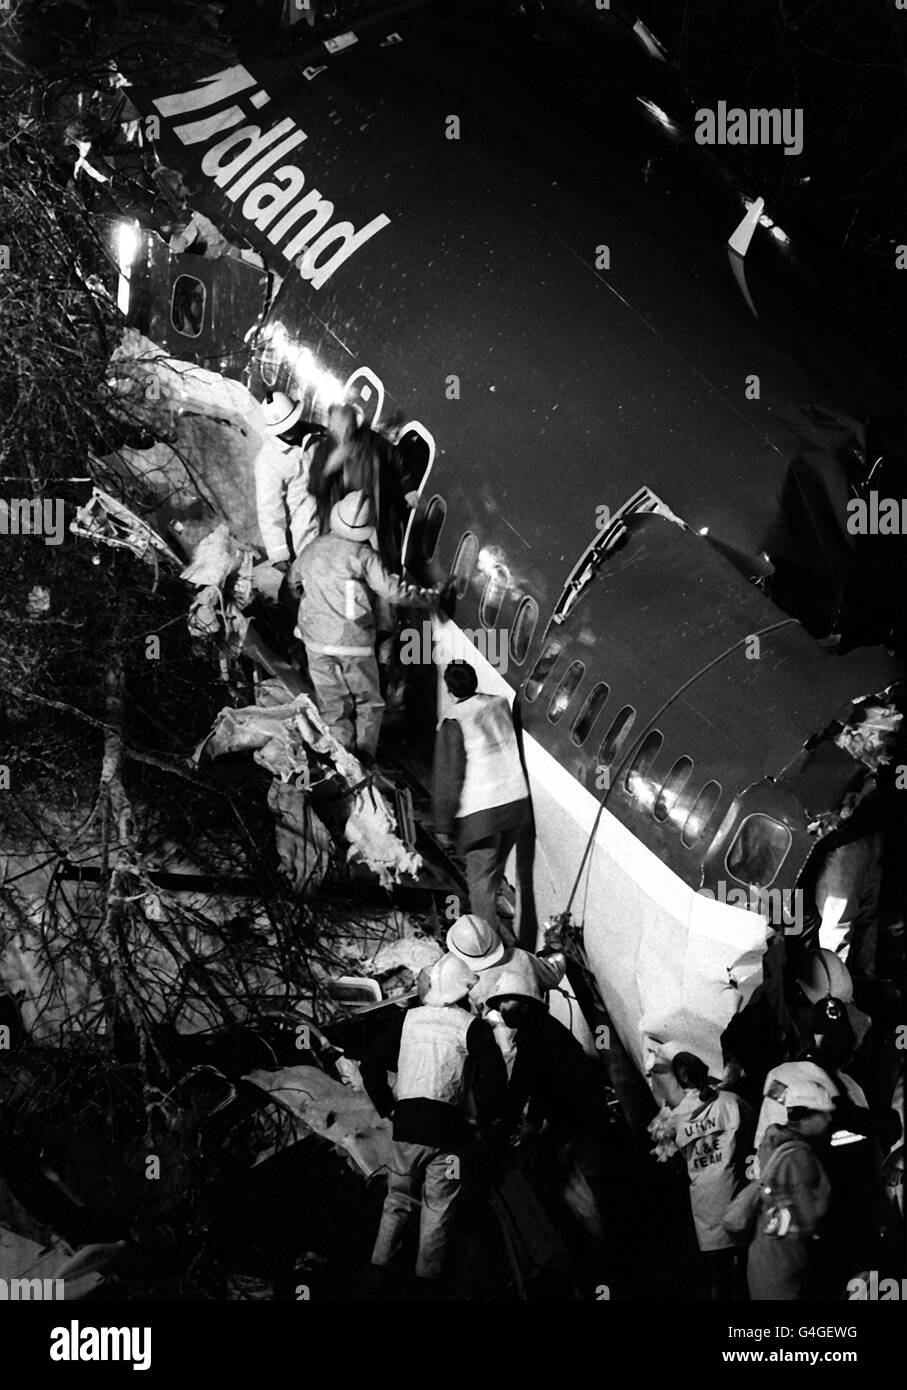 Bibliotheksdatei vom 09.01.89. Über Rettungskräfte, die die zerbrochenen Überreste der britischen Boeing 737 400 der Midlands auf dem Autobahndamm M1 durchsieben Mal getötet haben, als das Flugzeug am Freitag, dem 8. Januar 1989, in der Nähe von Kegworth, Leicestershire, abgestürzt ist. An diesem Freitag (08.01.99) jährt sich die Katastrophe zum zehnten Mal. PA-Fotos. Siehe PA Story CRASH Kegworth. Stockfoto